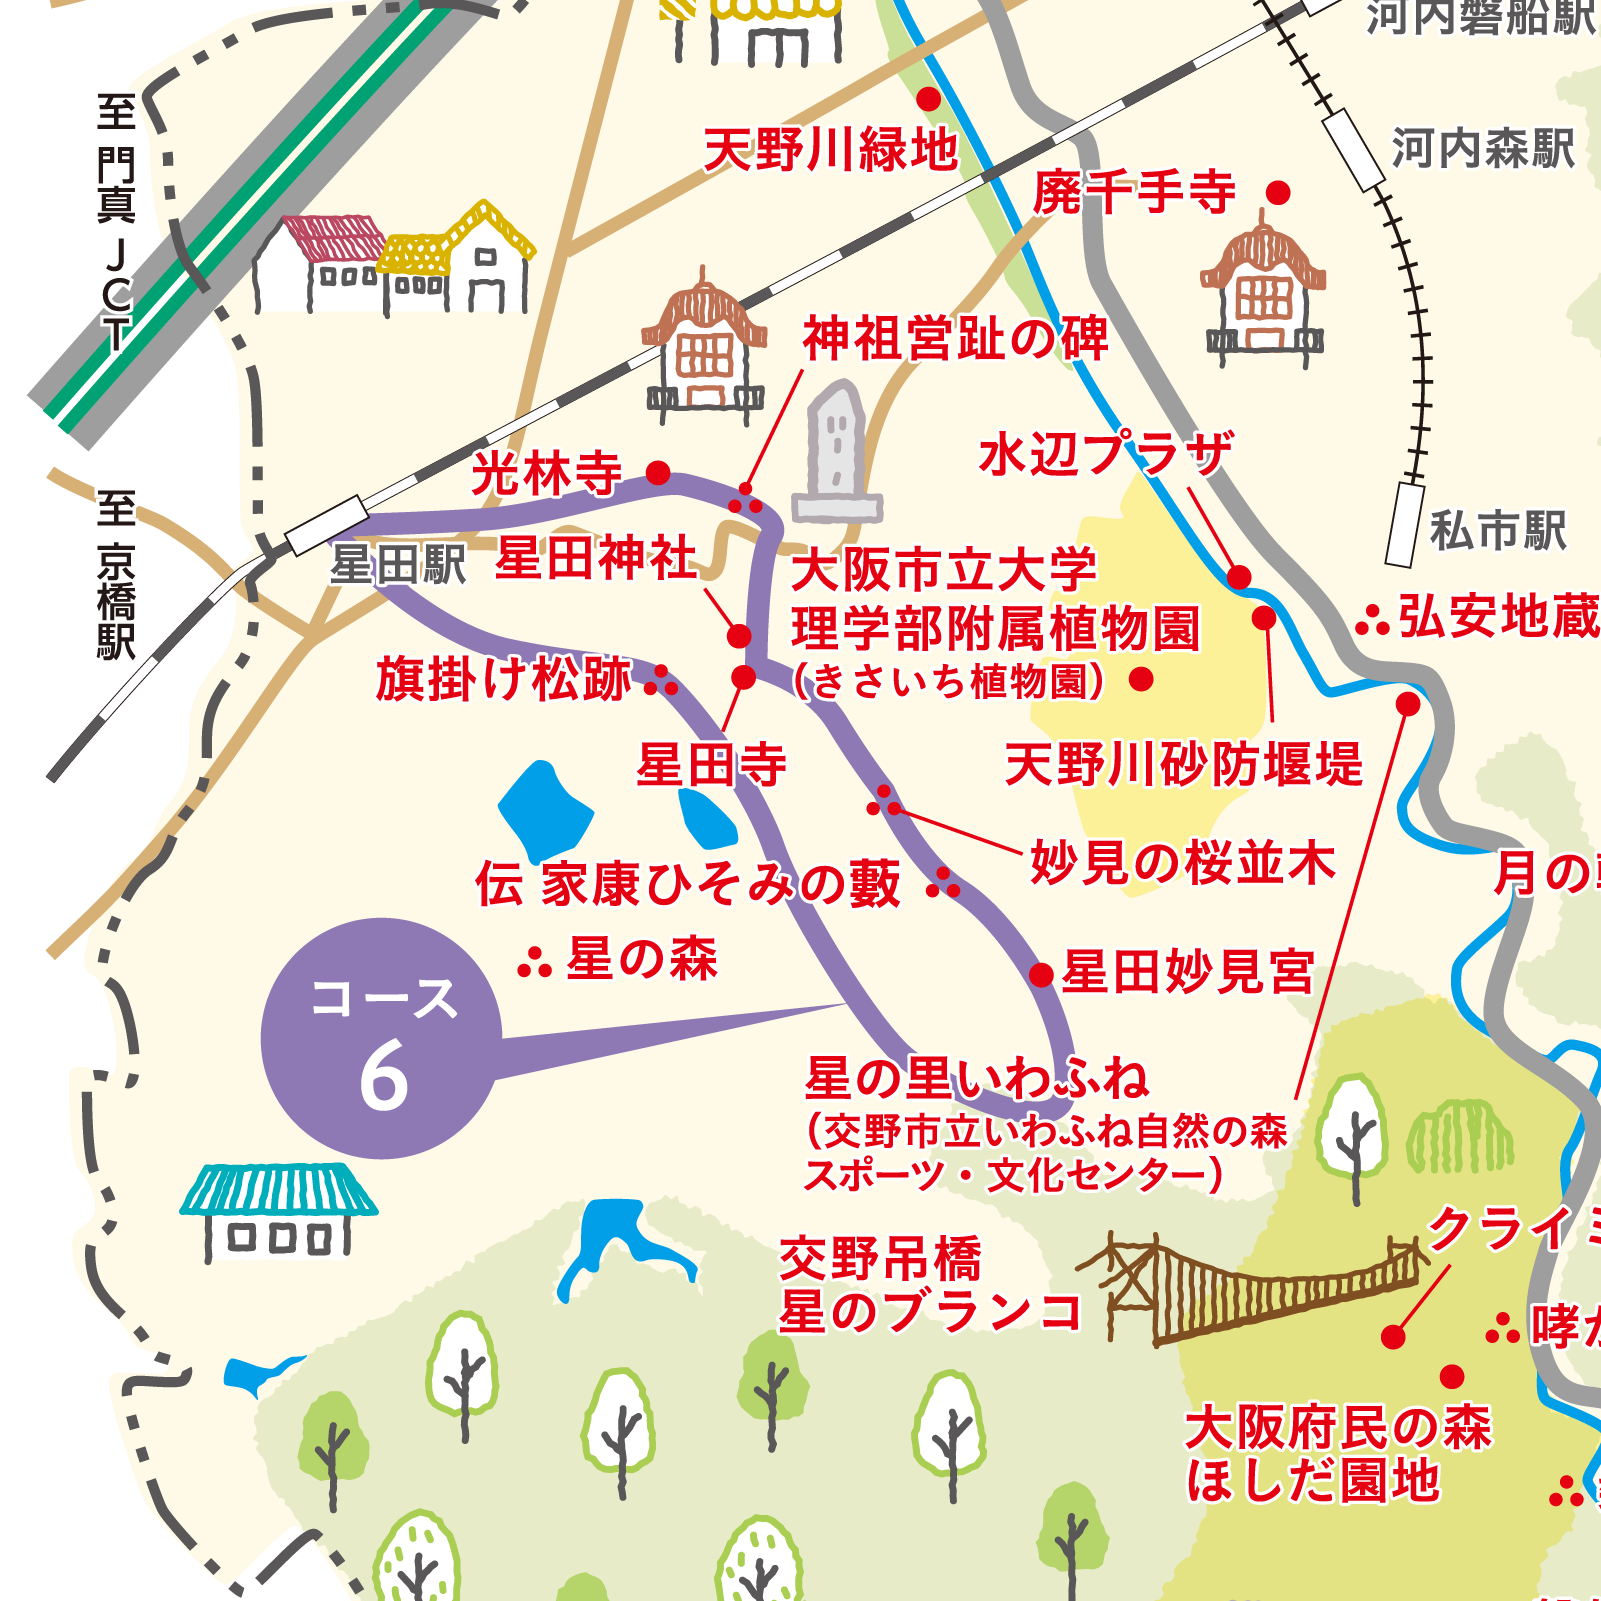 かたのスイッチ 大阪 交野市の地図マップ イベント 観光情報サイト かたのスイッチ